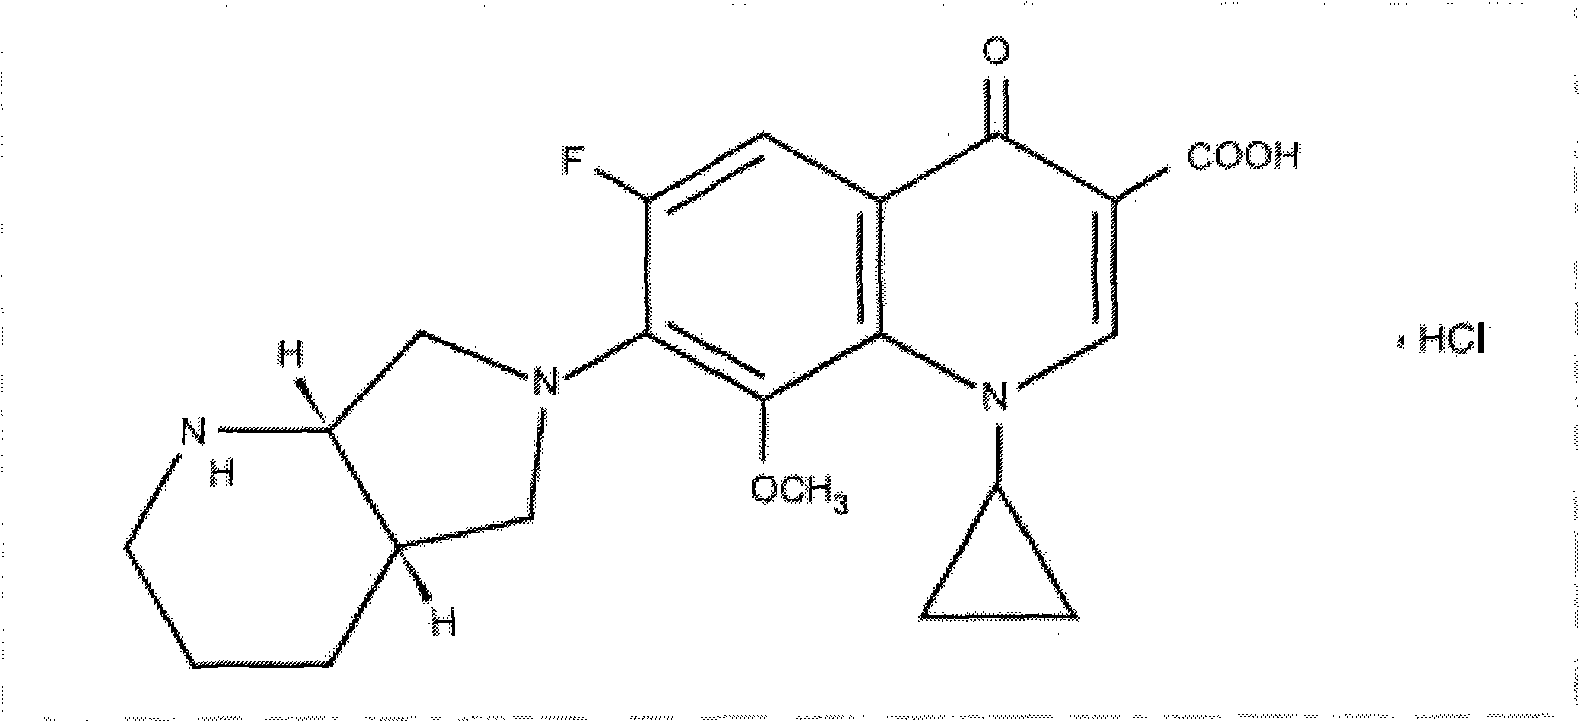 Synthesizing method of moxifloxacin hydrochloride